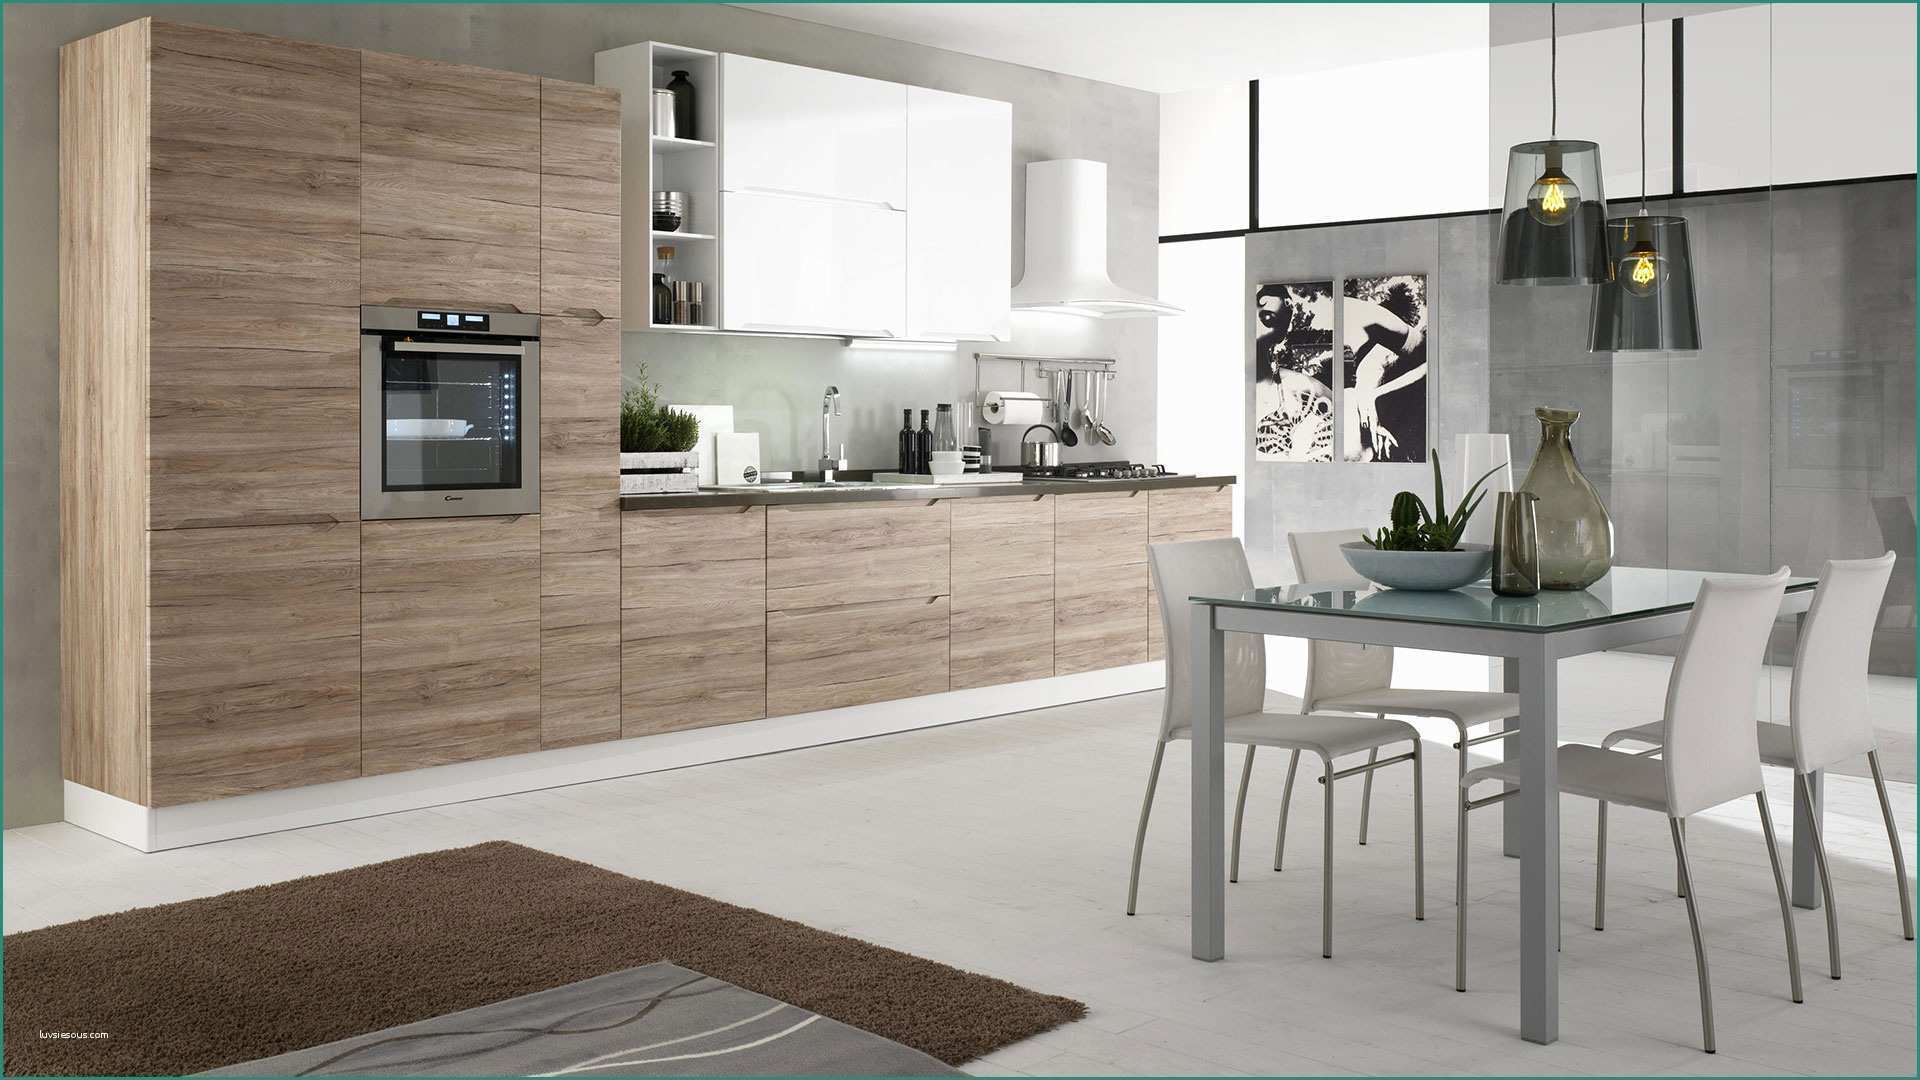 Cucina In Muratura Moderna E Immagini Di Cucine Moderne Excellent soggiorno Open Space soggiorno